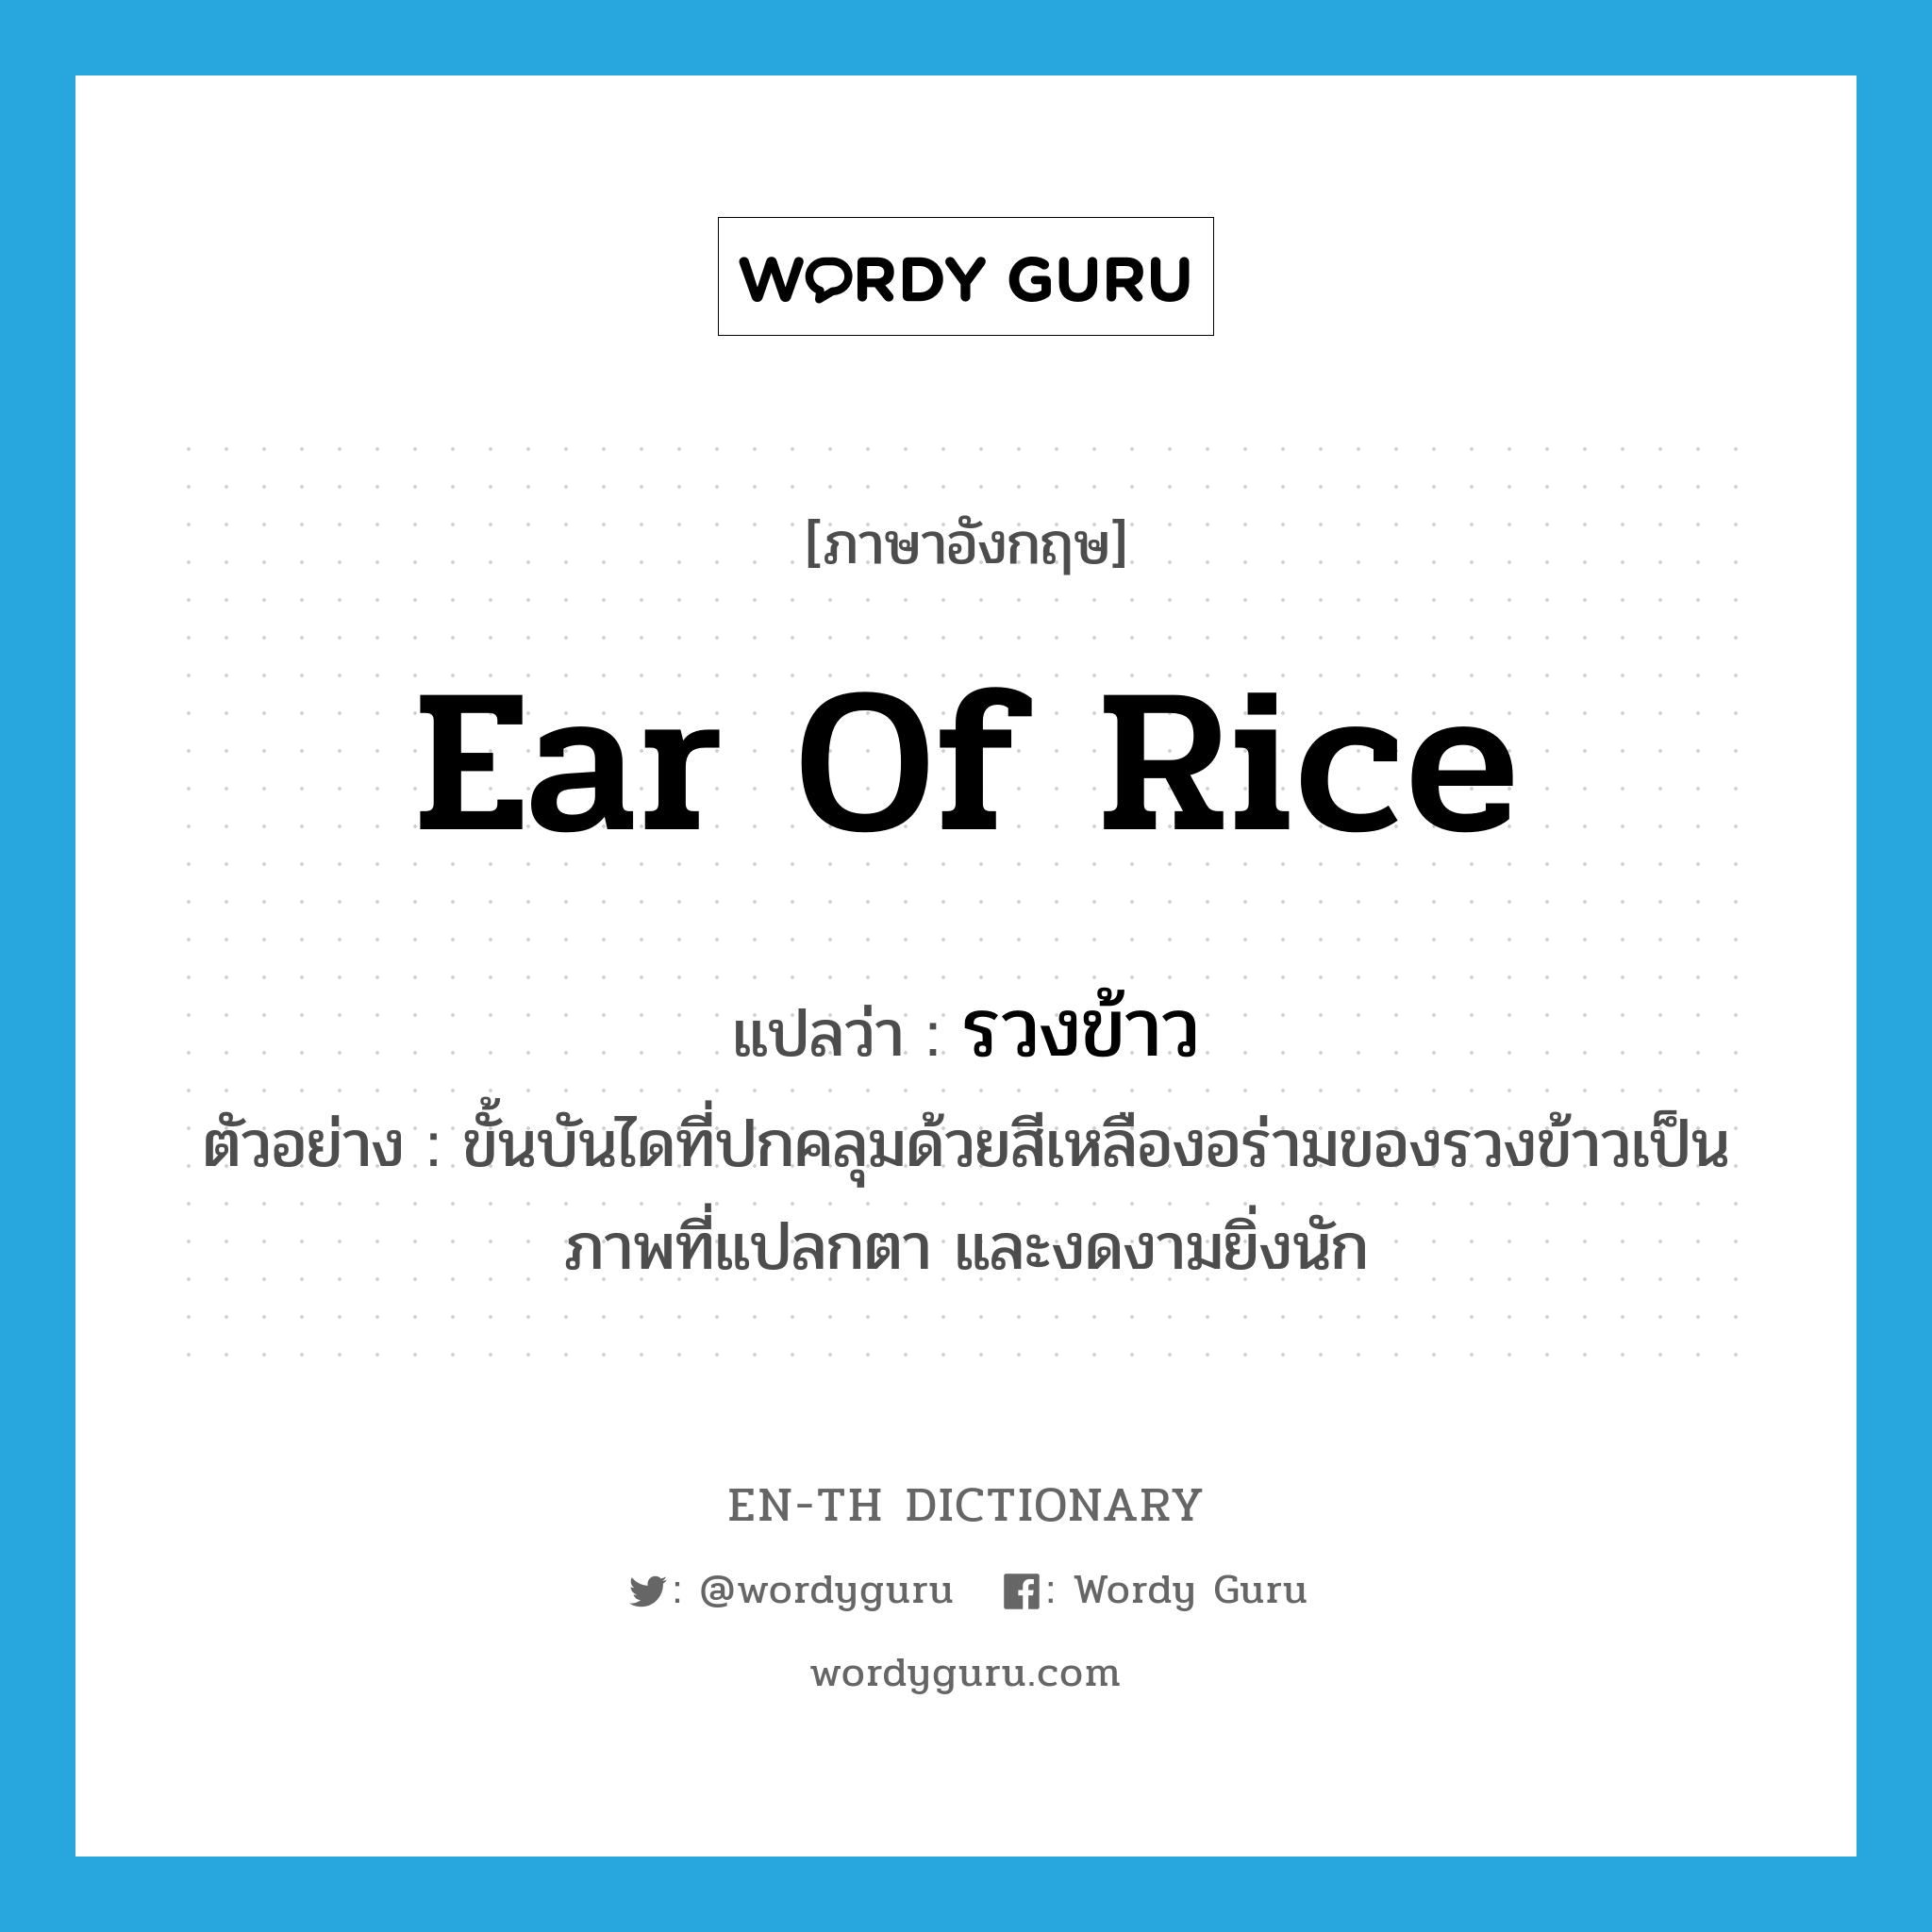 ear of rice แปลว่า?, คำศัพท์ภาษาอังกฤษ ear of rice แปลว่า รวงข้าว ประเภท N ตัวอย่าง ขั้นบันไดที่ปกคลุมด้วยสีเหลืองอร่ามของรวงข้าวเป็นภาพที่แปลกตา และงดงามยิ่งนัก หมวด N